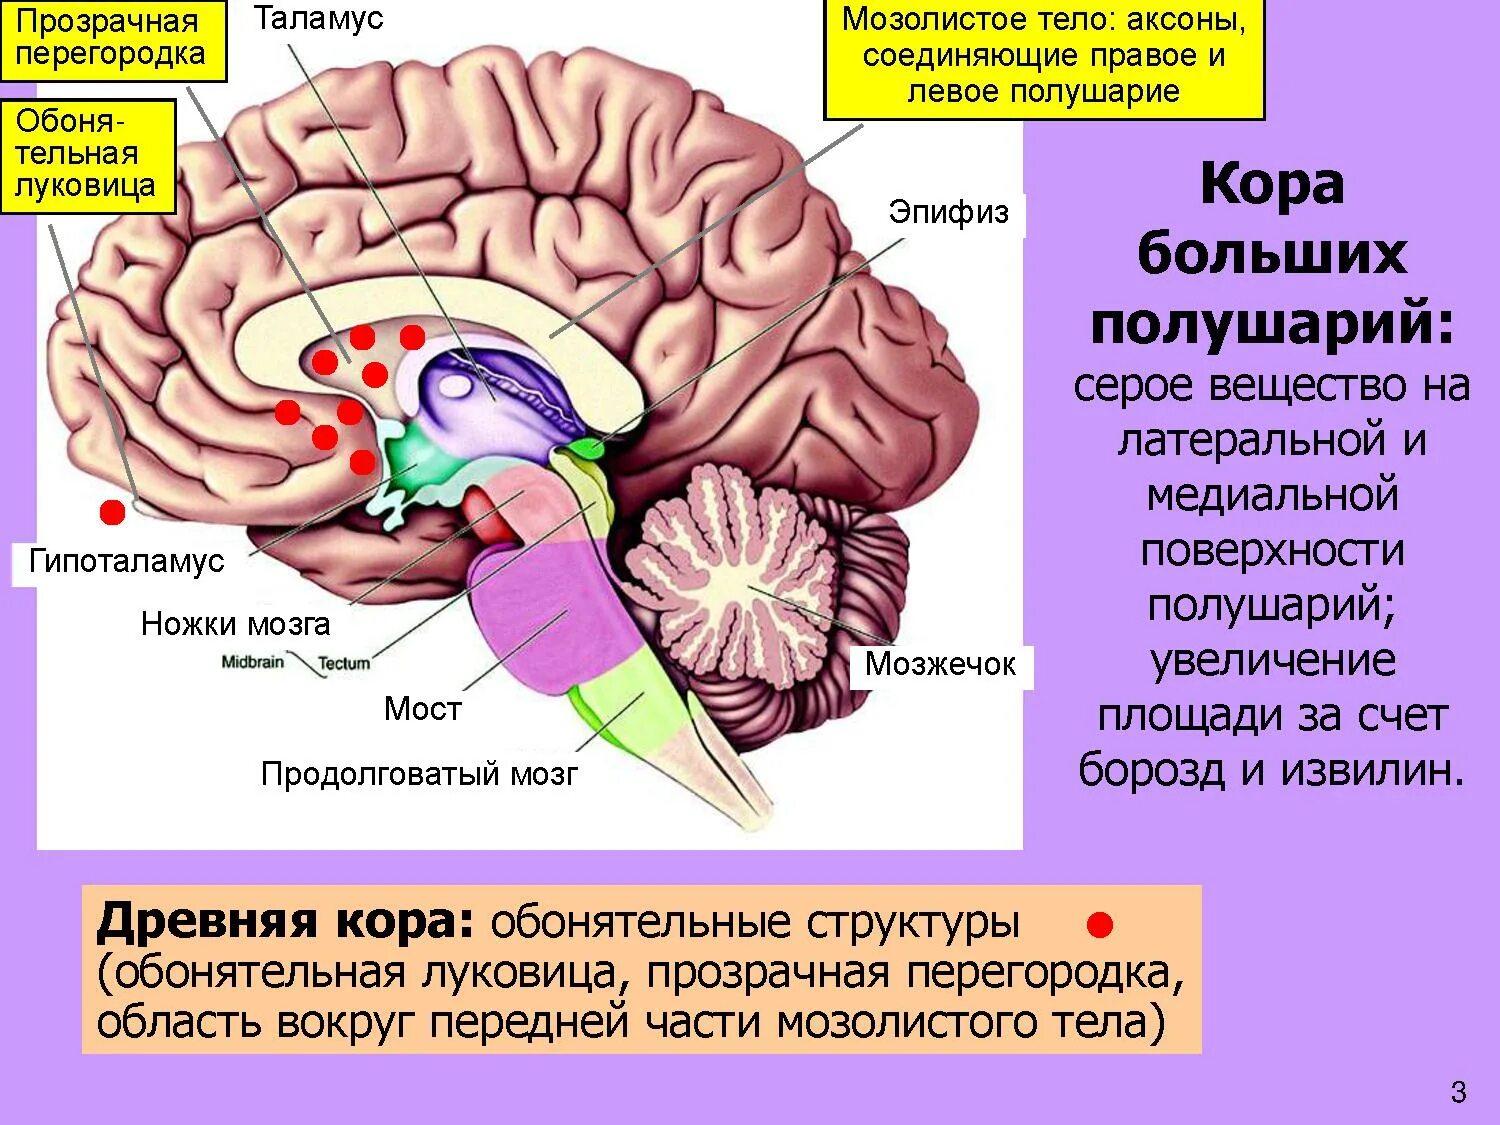 Центр мозга и тела. Мозолистое тело конечного мозга функции. Прозрачная перегородка мозга анатомия. Строение мозолистого тела головного мозга. Таламус, гипоталамус, мост, мозжечок, продолговатый мозг..